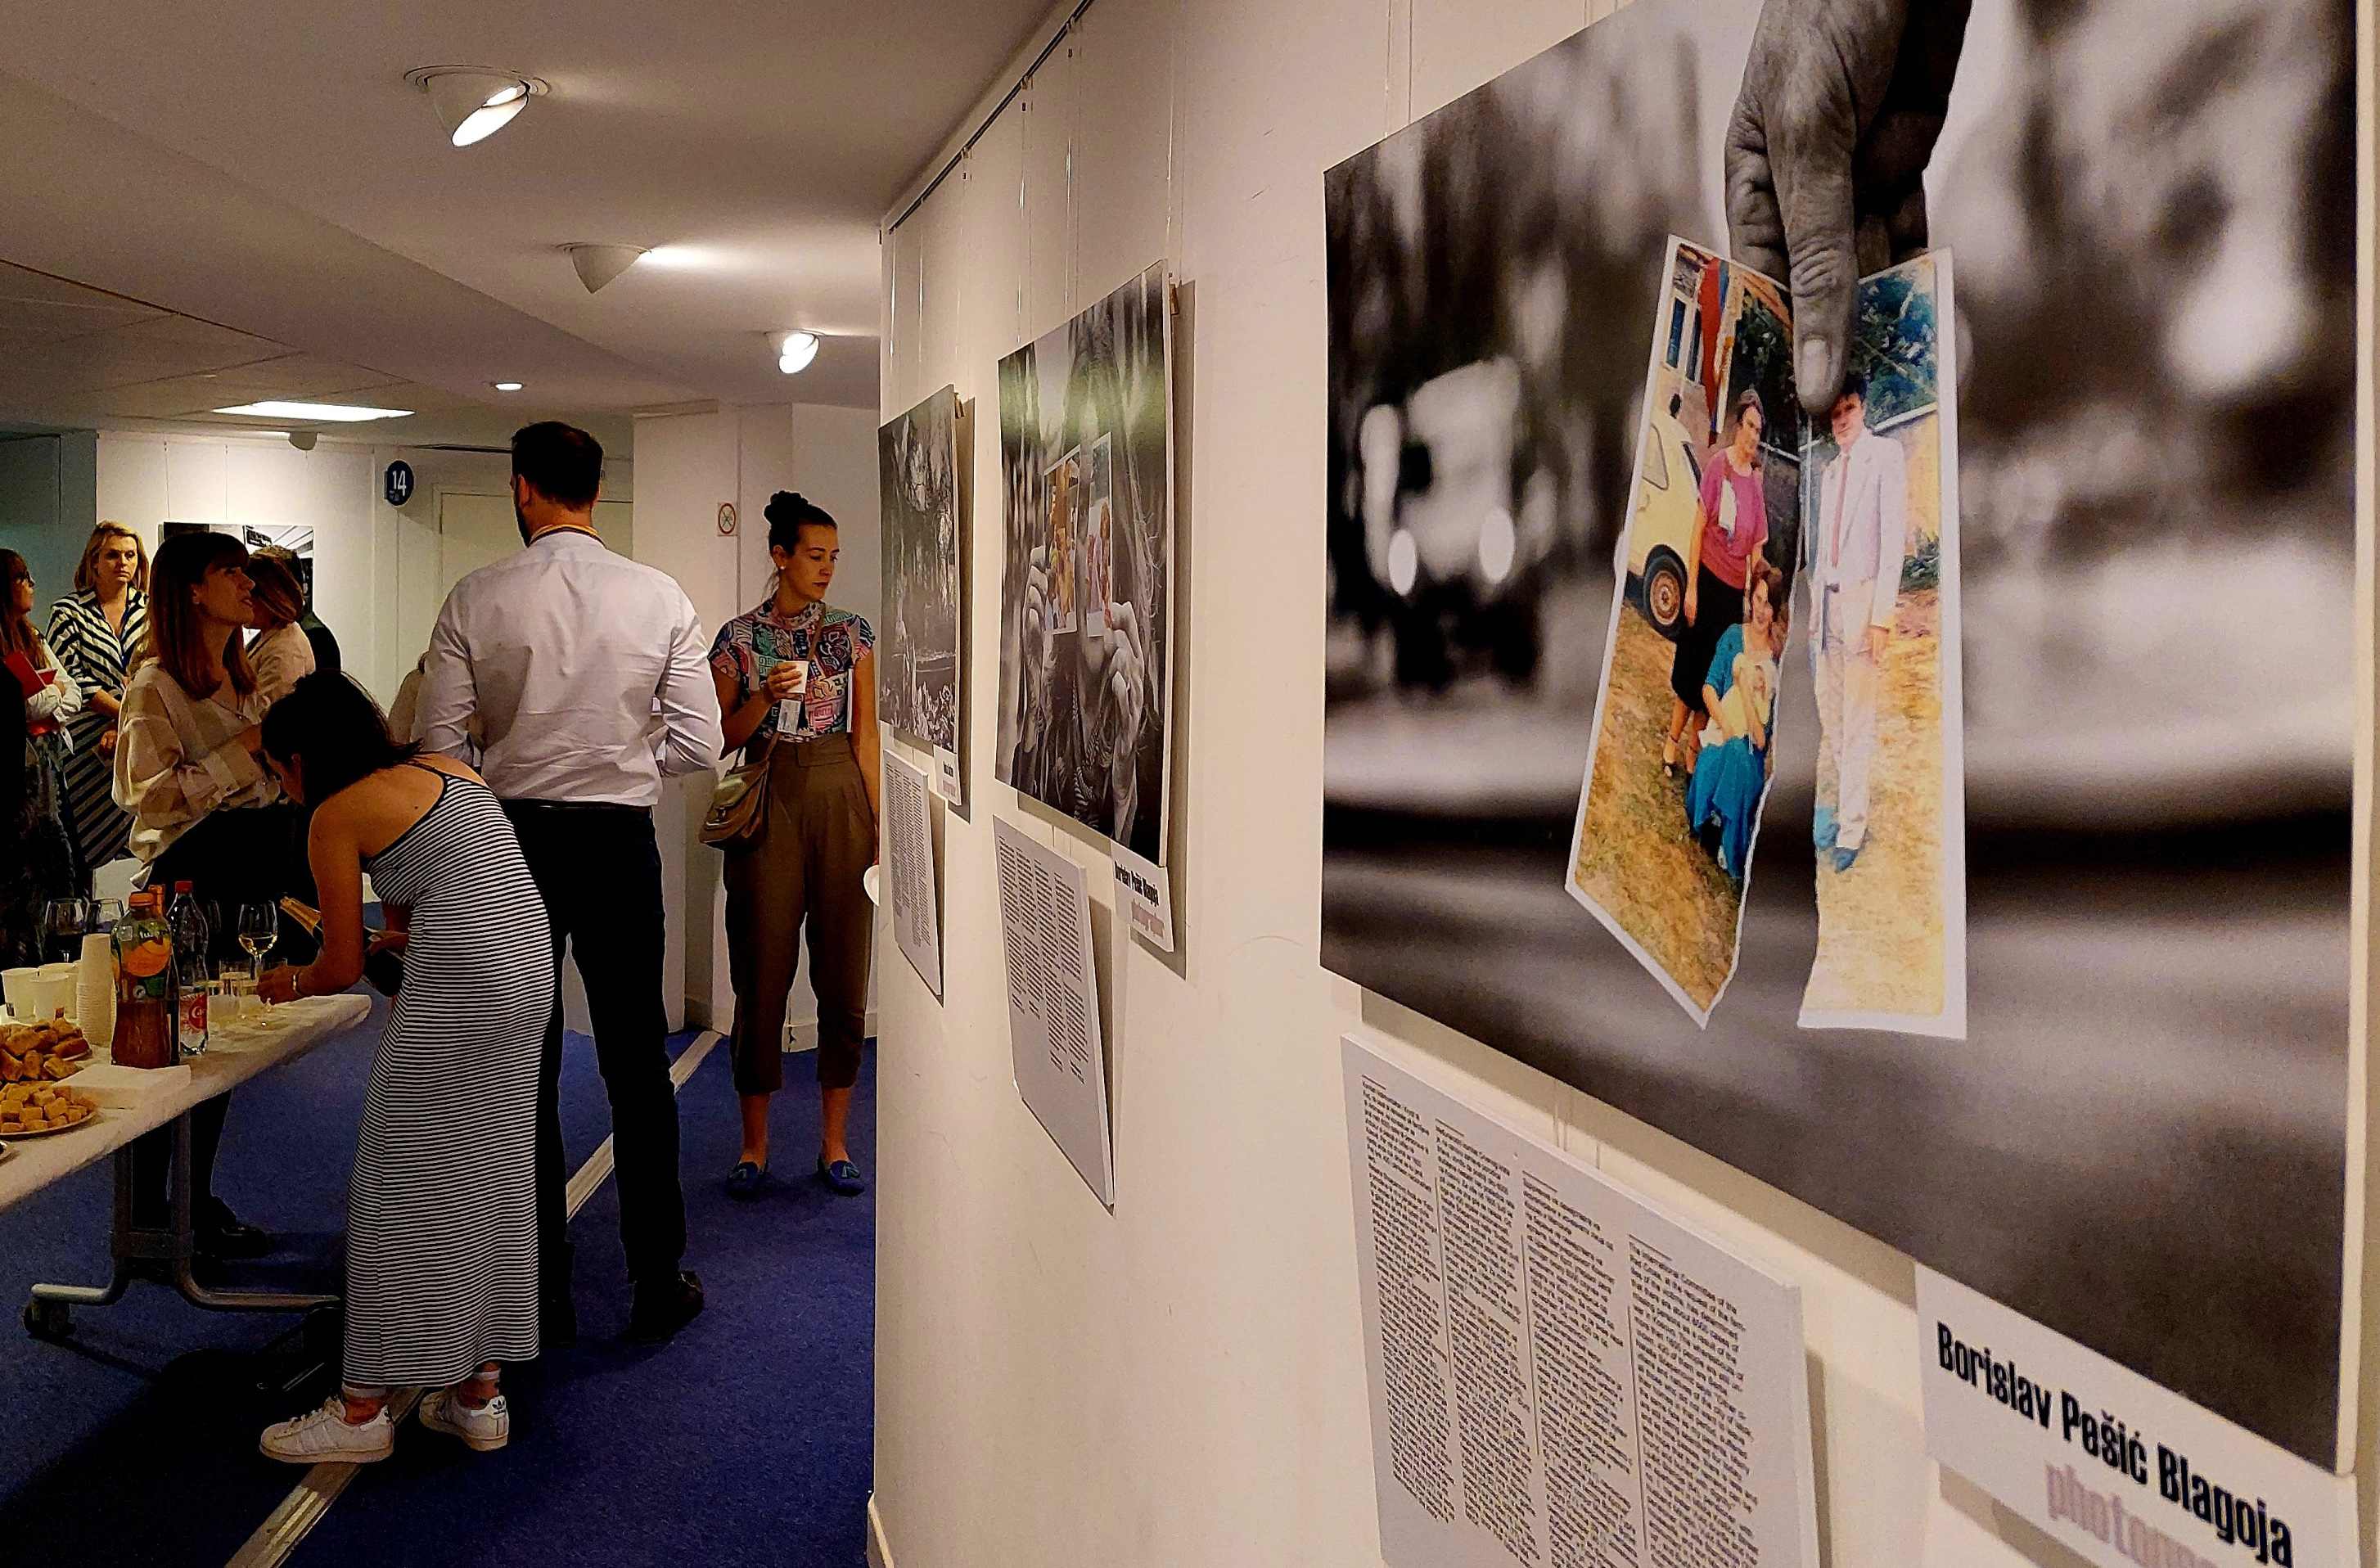 Los miembros de la audiencia miran las fotografías que se muestran en la pared.